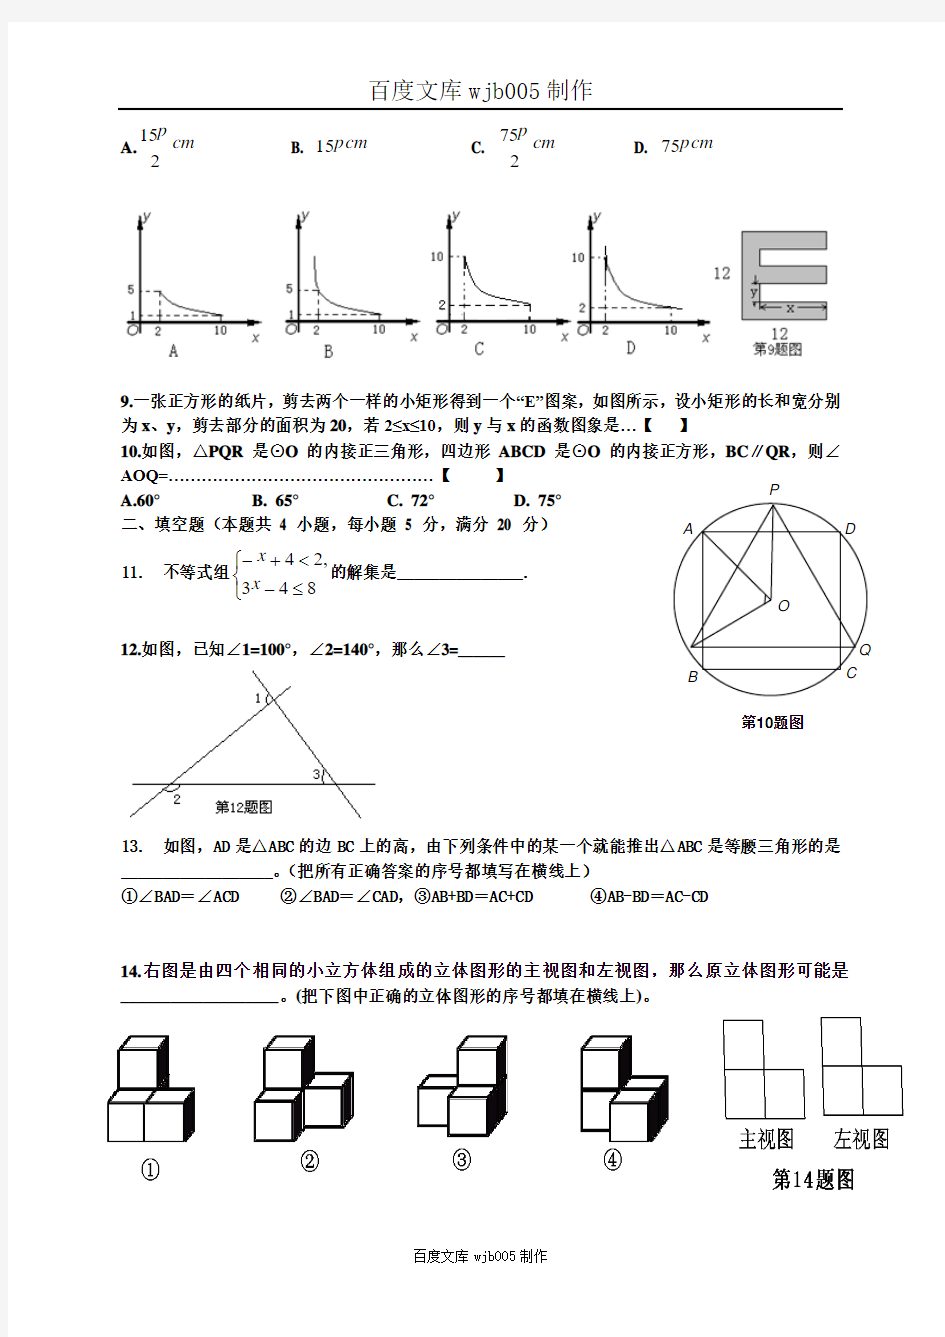 2015安徽中考数学模拟试题(内部专用)